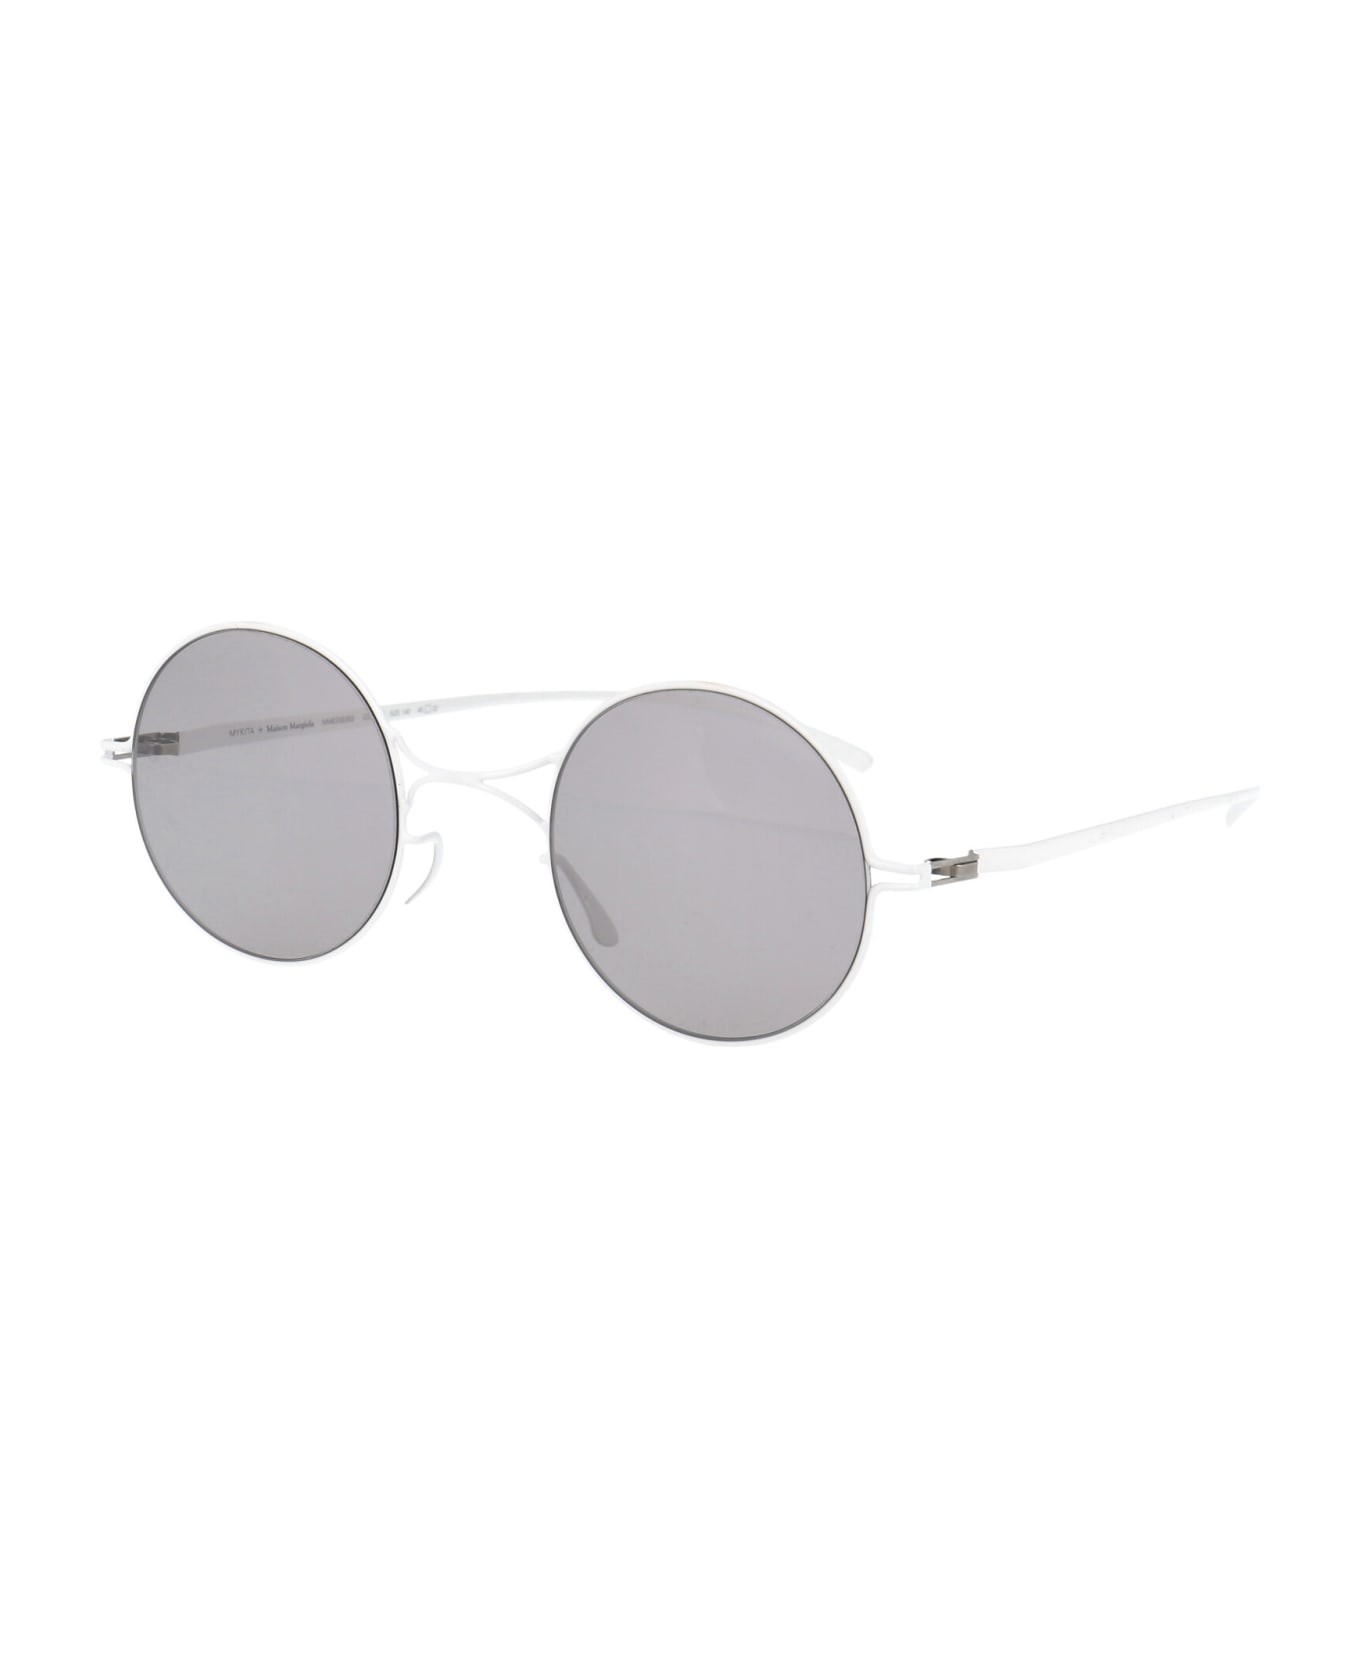 Mykita Mmesse002  Sunglasses - E13 WHITE Warmgrey Flash サングラス